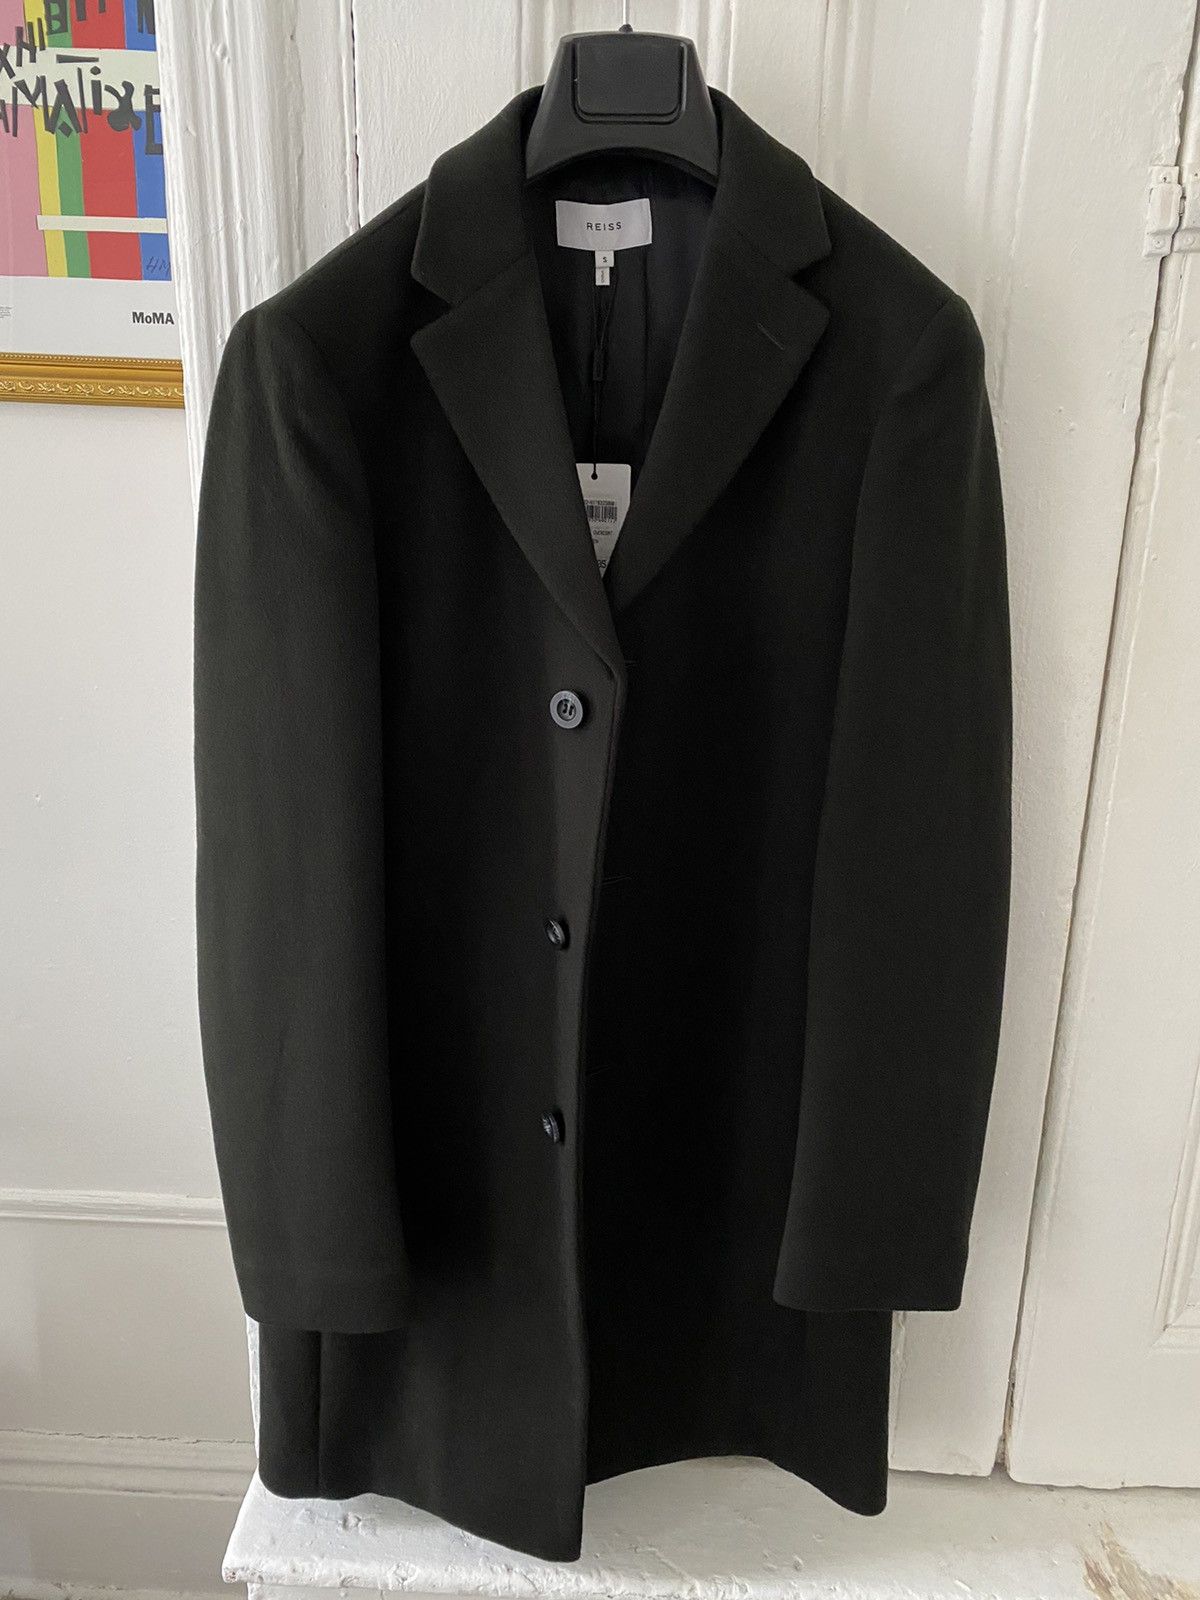 Reiss Dark Green overcoat | Grailed